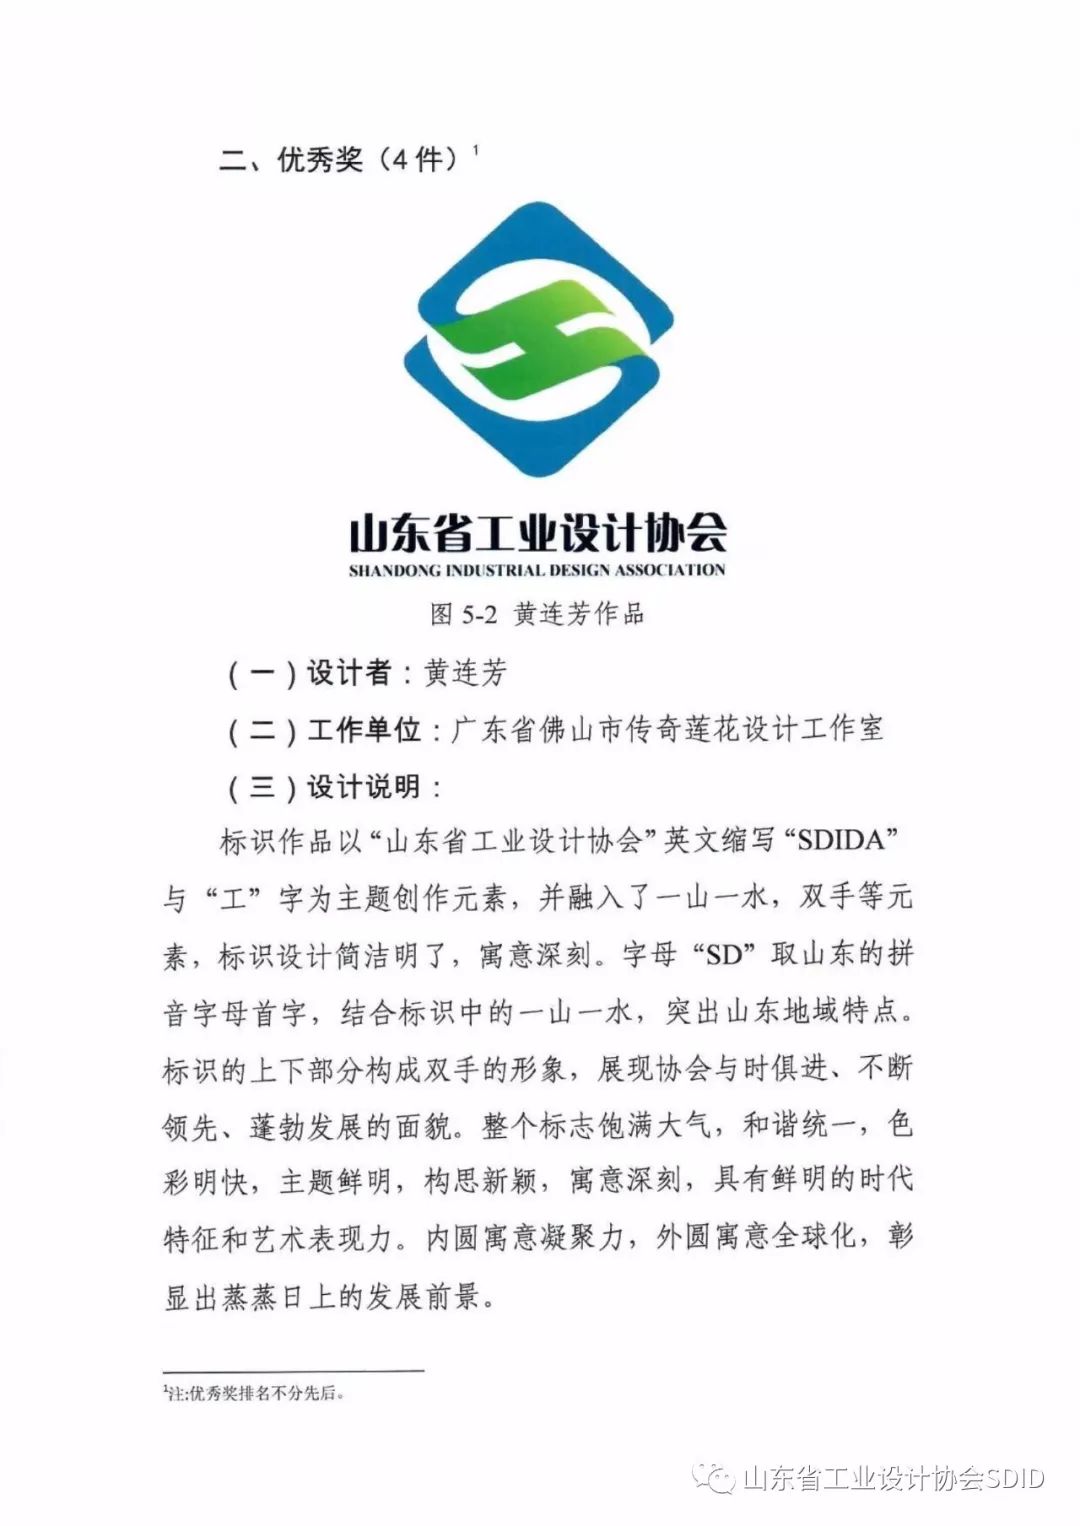 山东省工业设计协会徽标(LOGO)获奖名单公示